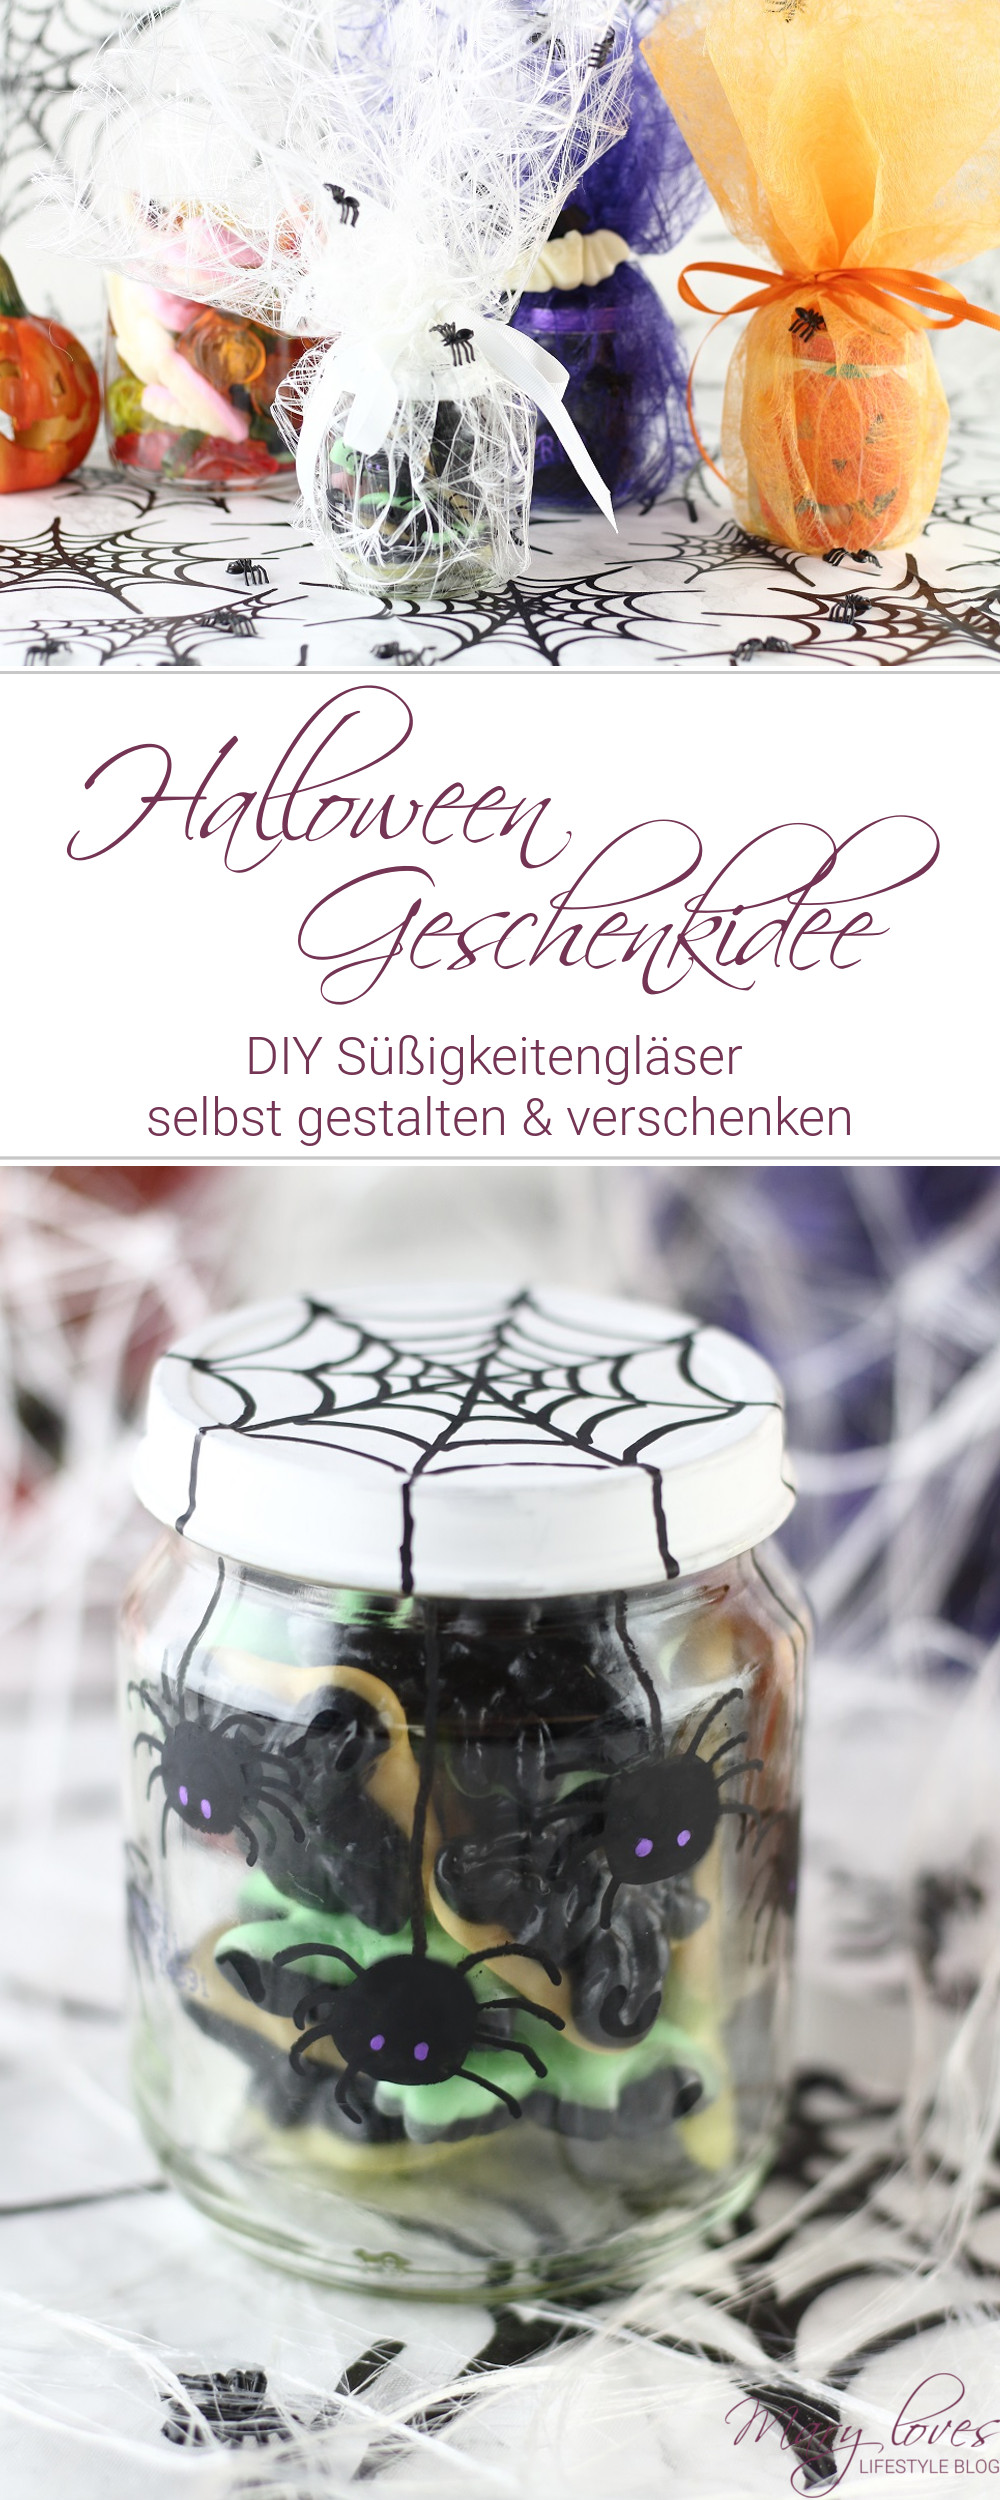 [Anzeige] Halloween-Geschenkidee - DIY Süßigkeitengläser selbst gestalten - #halloween #halloweendiy #süßigkeitengläser #süßesodersaures #geschenkidee #halloweengeschenk #bastelnmitkindern